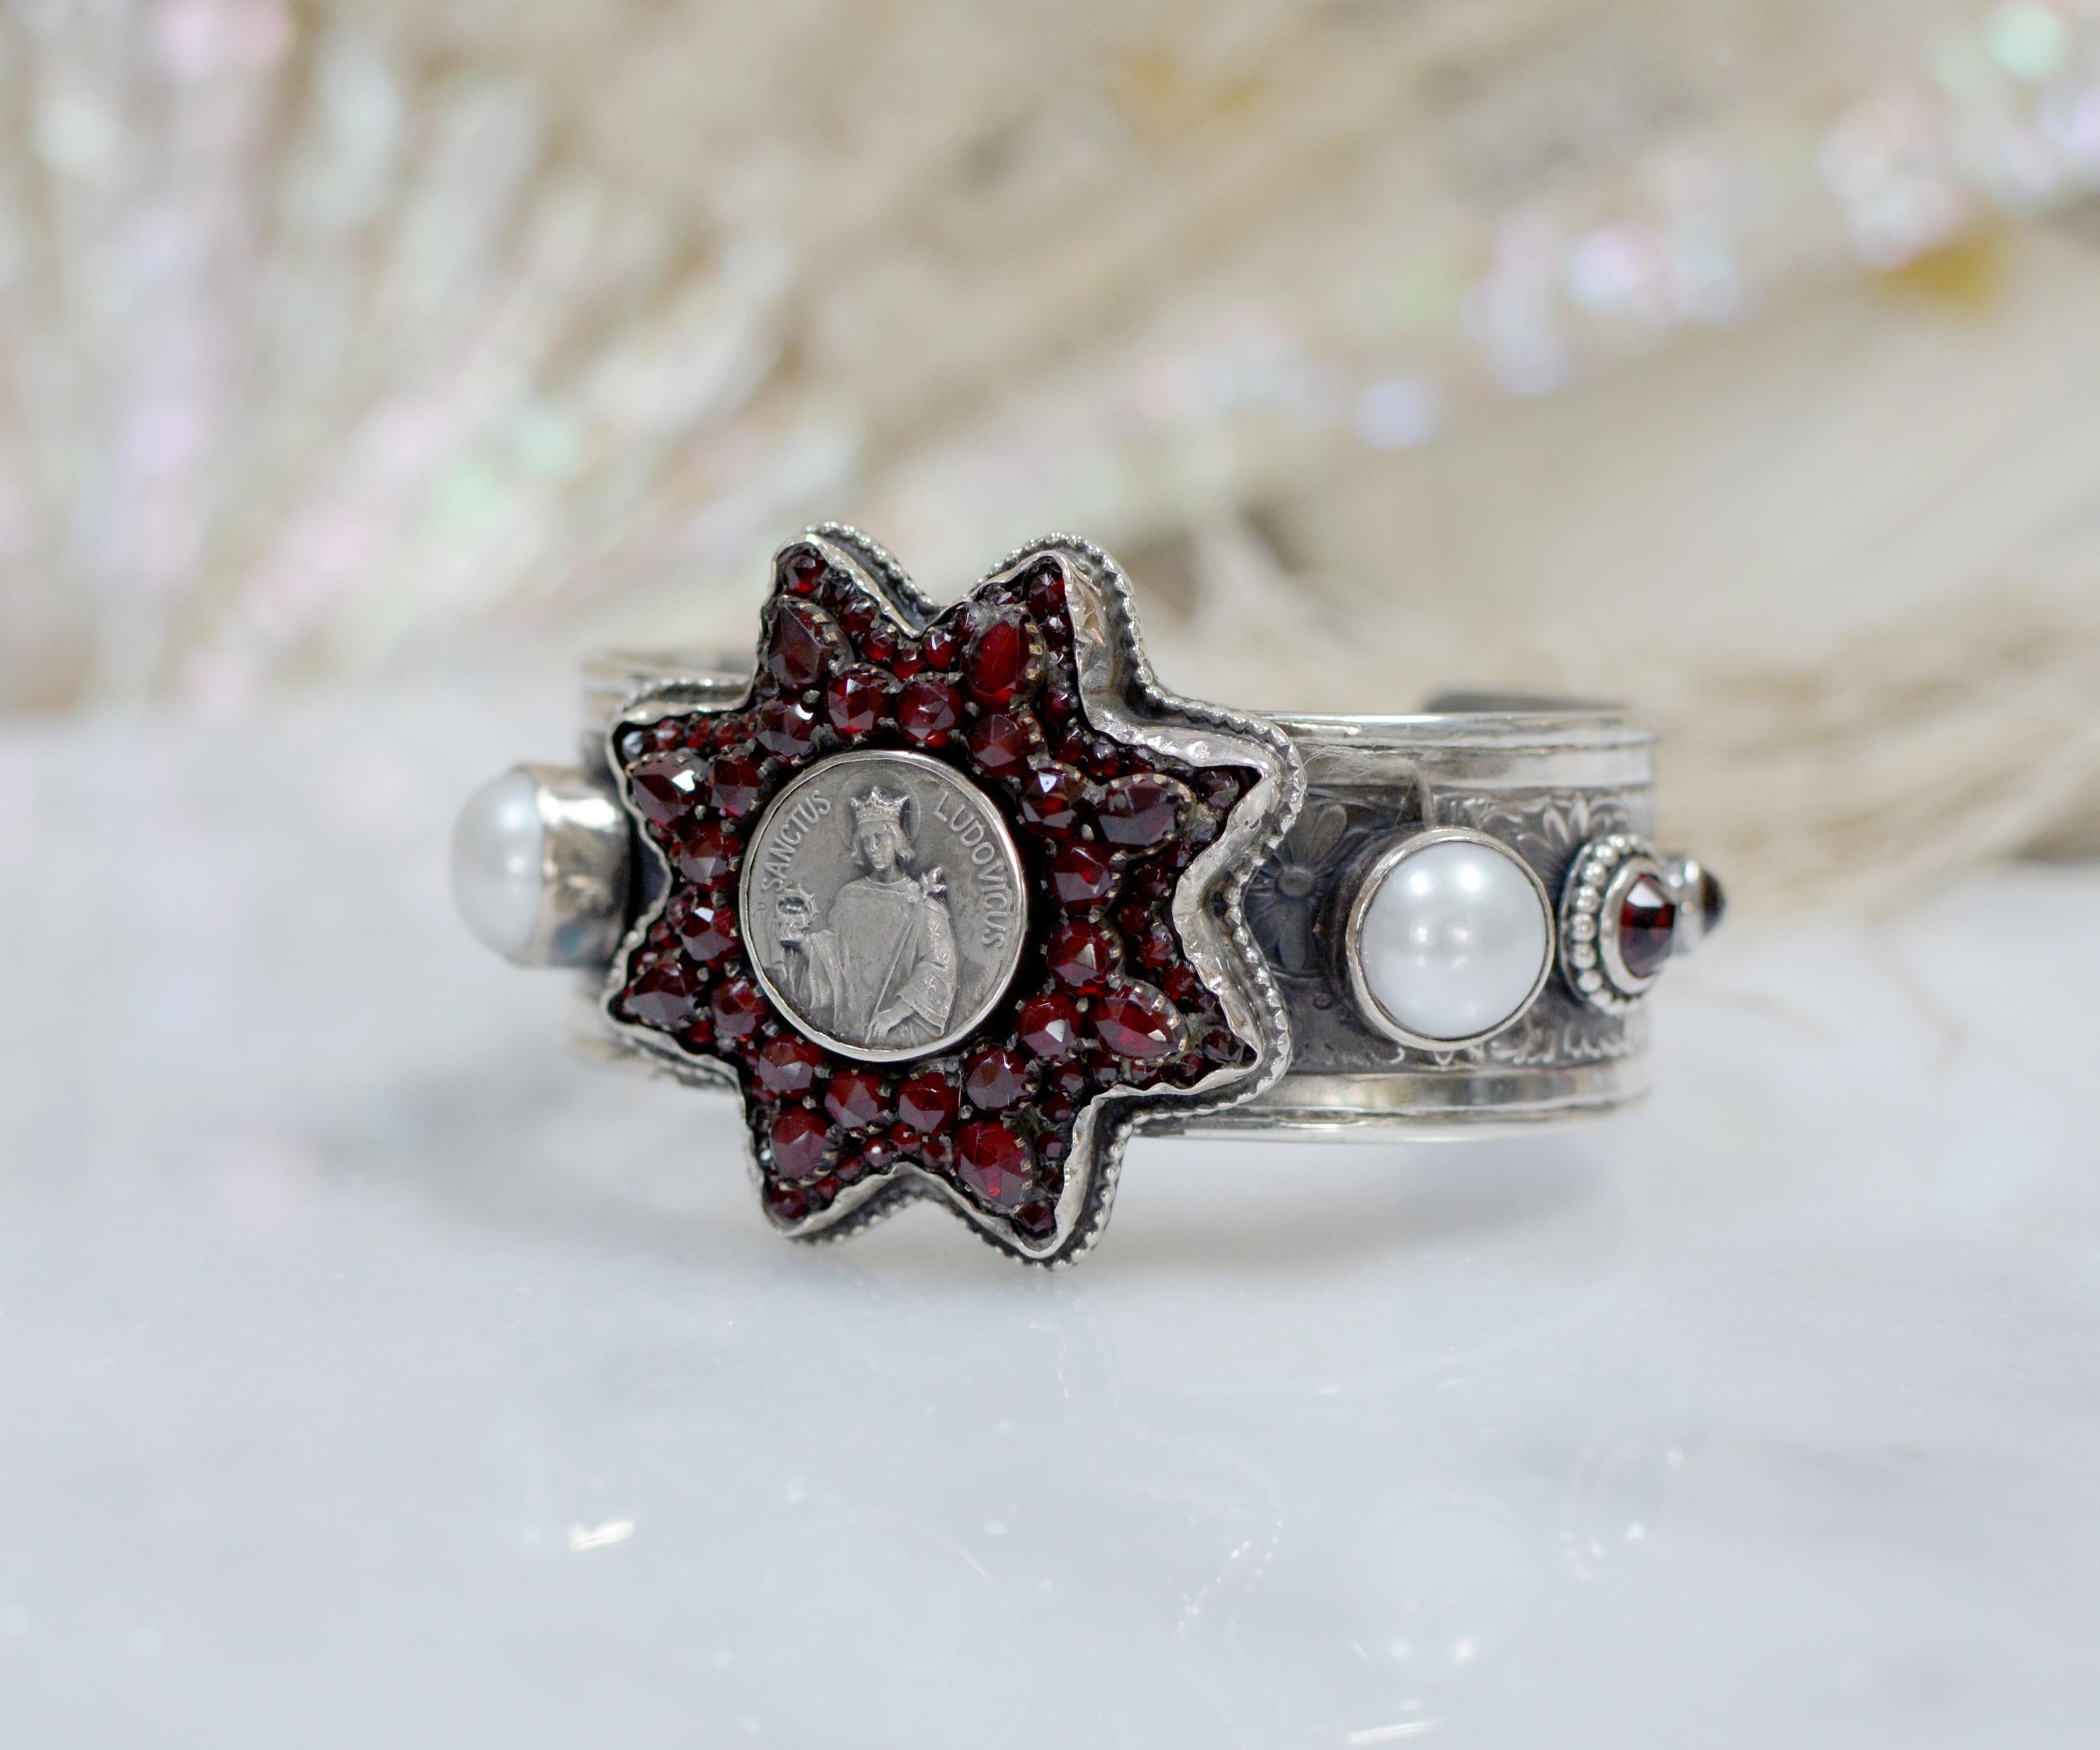 Dieses kostbare Armband der Designerin Jill Garber besteht aus einem exquisiten antiken viktorianischen Stern mit etwa 88 mit Zacken besetzten, altrosa geschliffenen böhmischen Granaten. Der achtzackige Stern umgibt eine französische religiöse